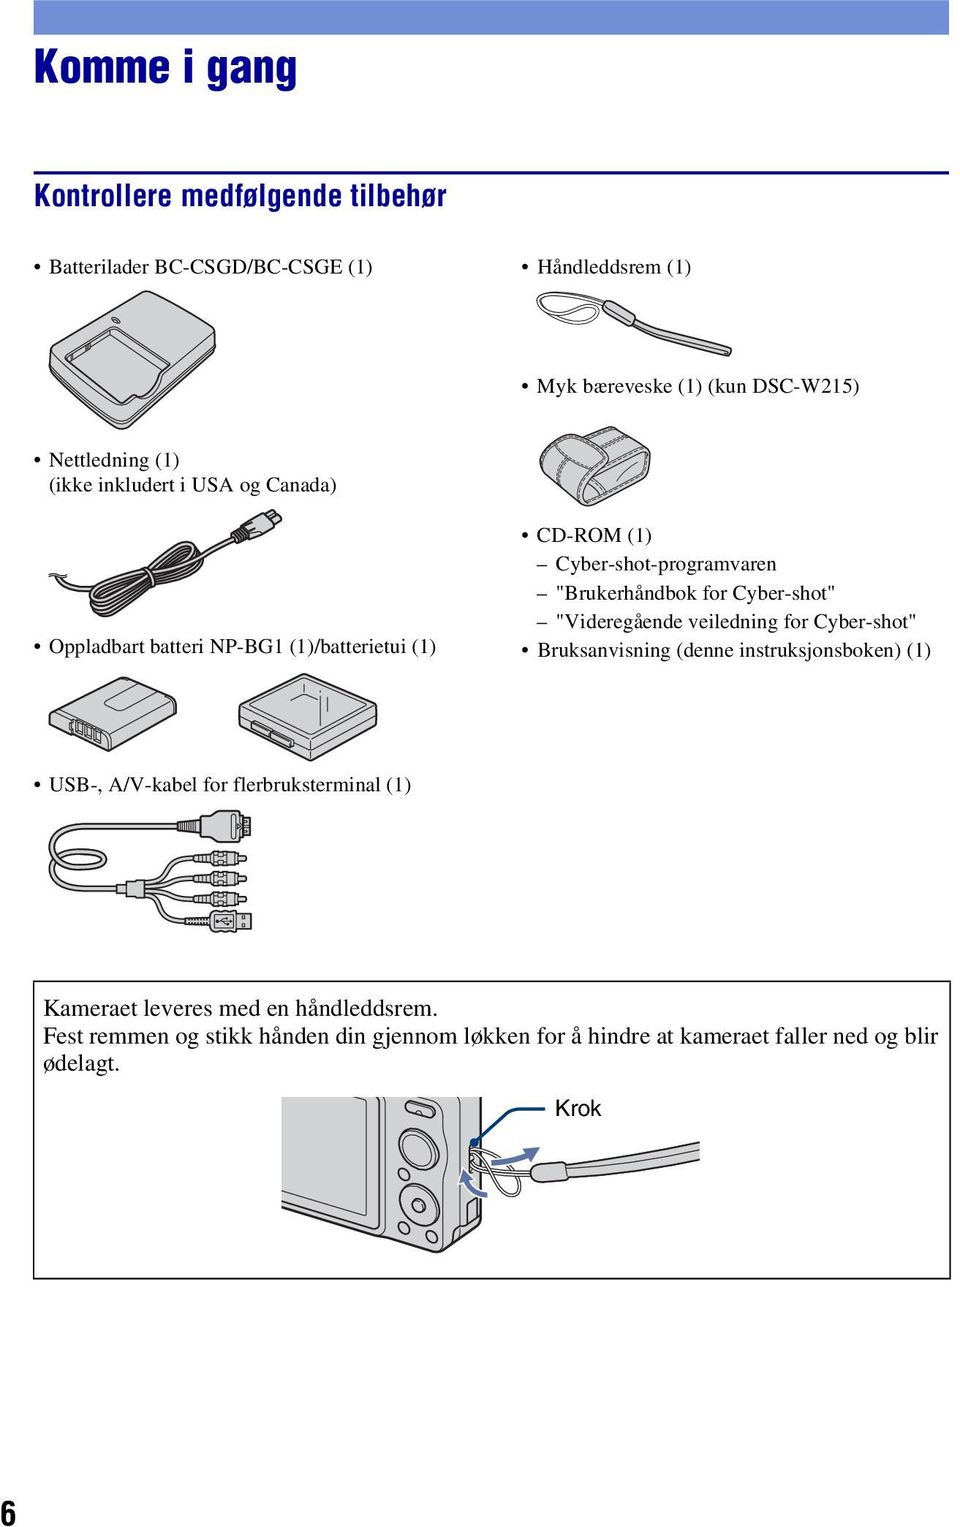 Cyber-shot" "Videregående veiledning for Cyber-shot" Bruksanvisning (denne instruksjonsboken) (1) USB-, A/V-kabel for flerbruksterminal (1)